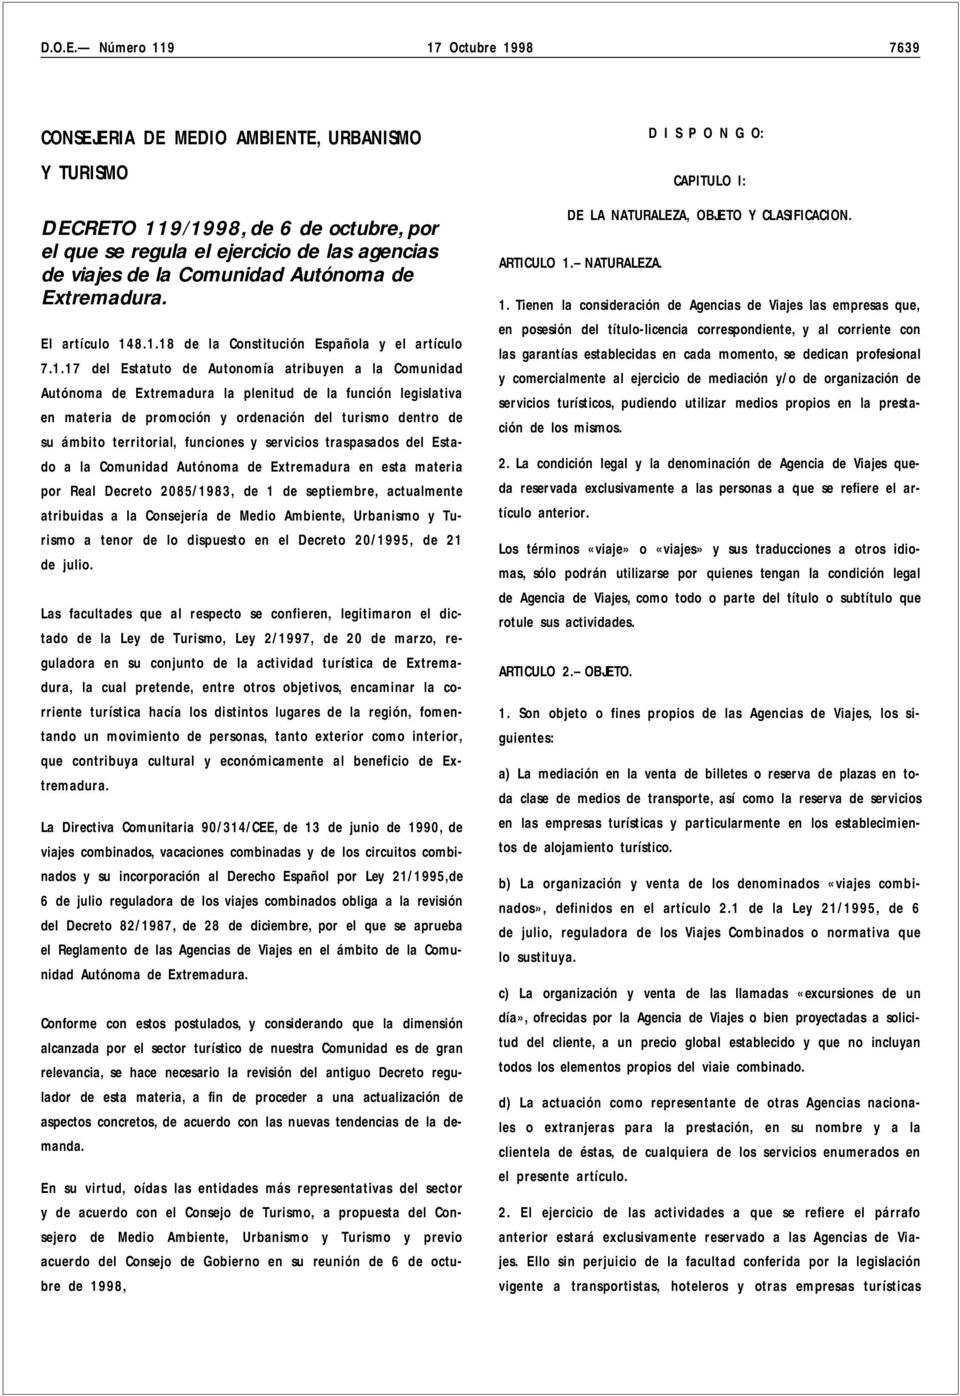 Autónoma de Extremadura. El artículo 14